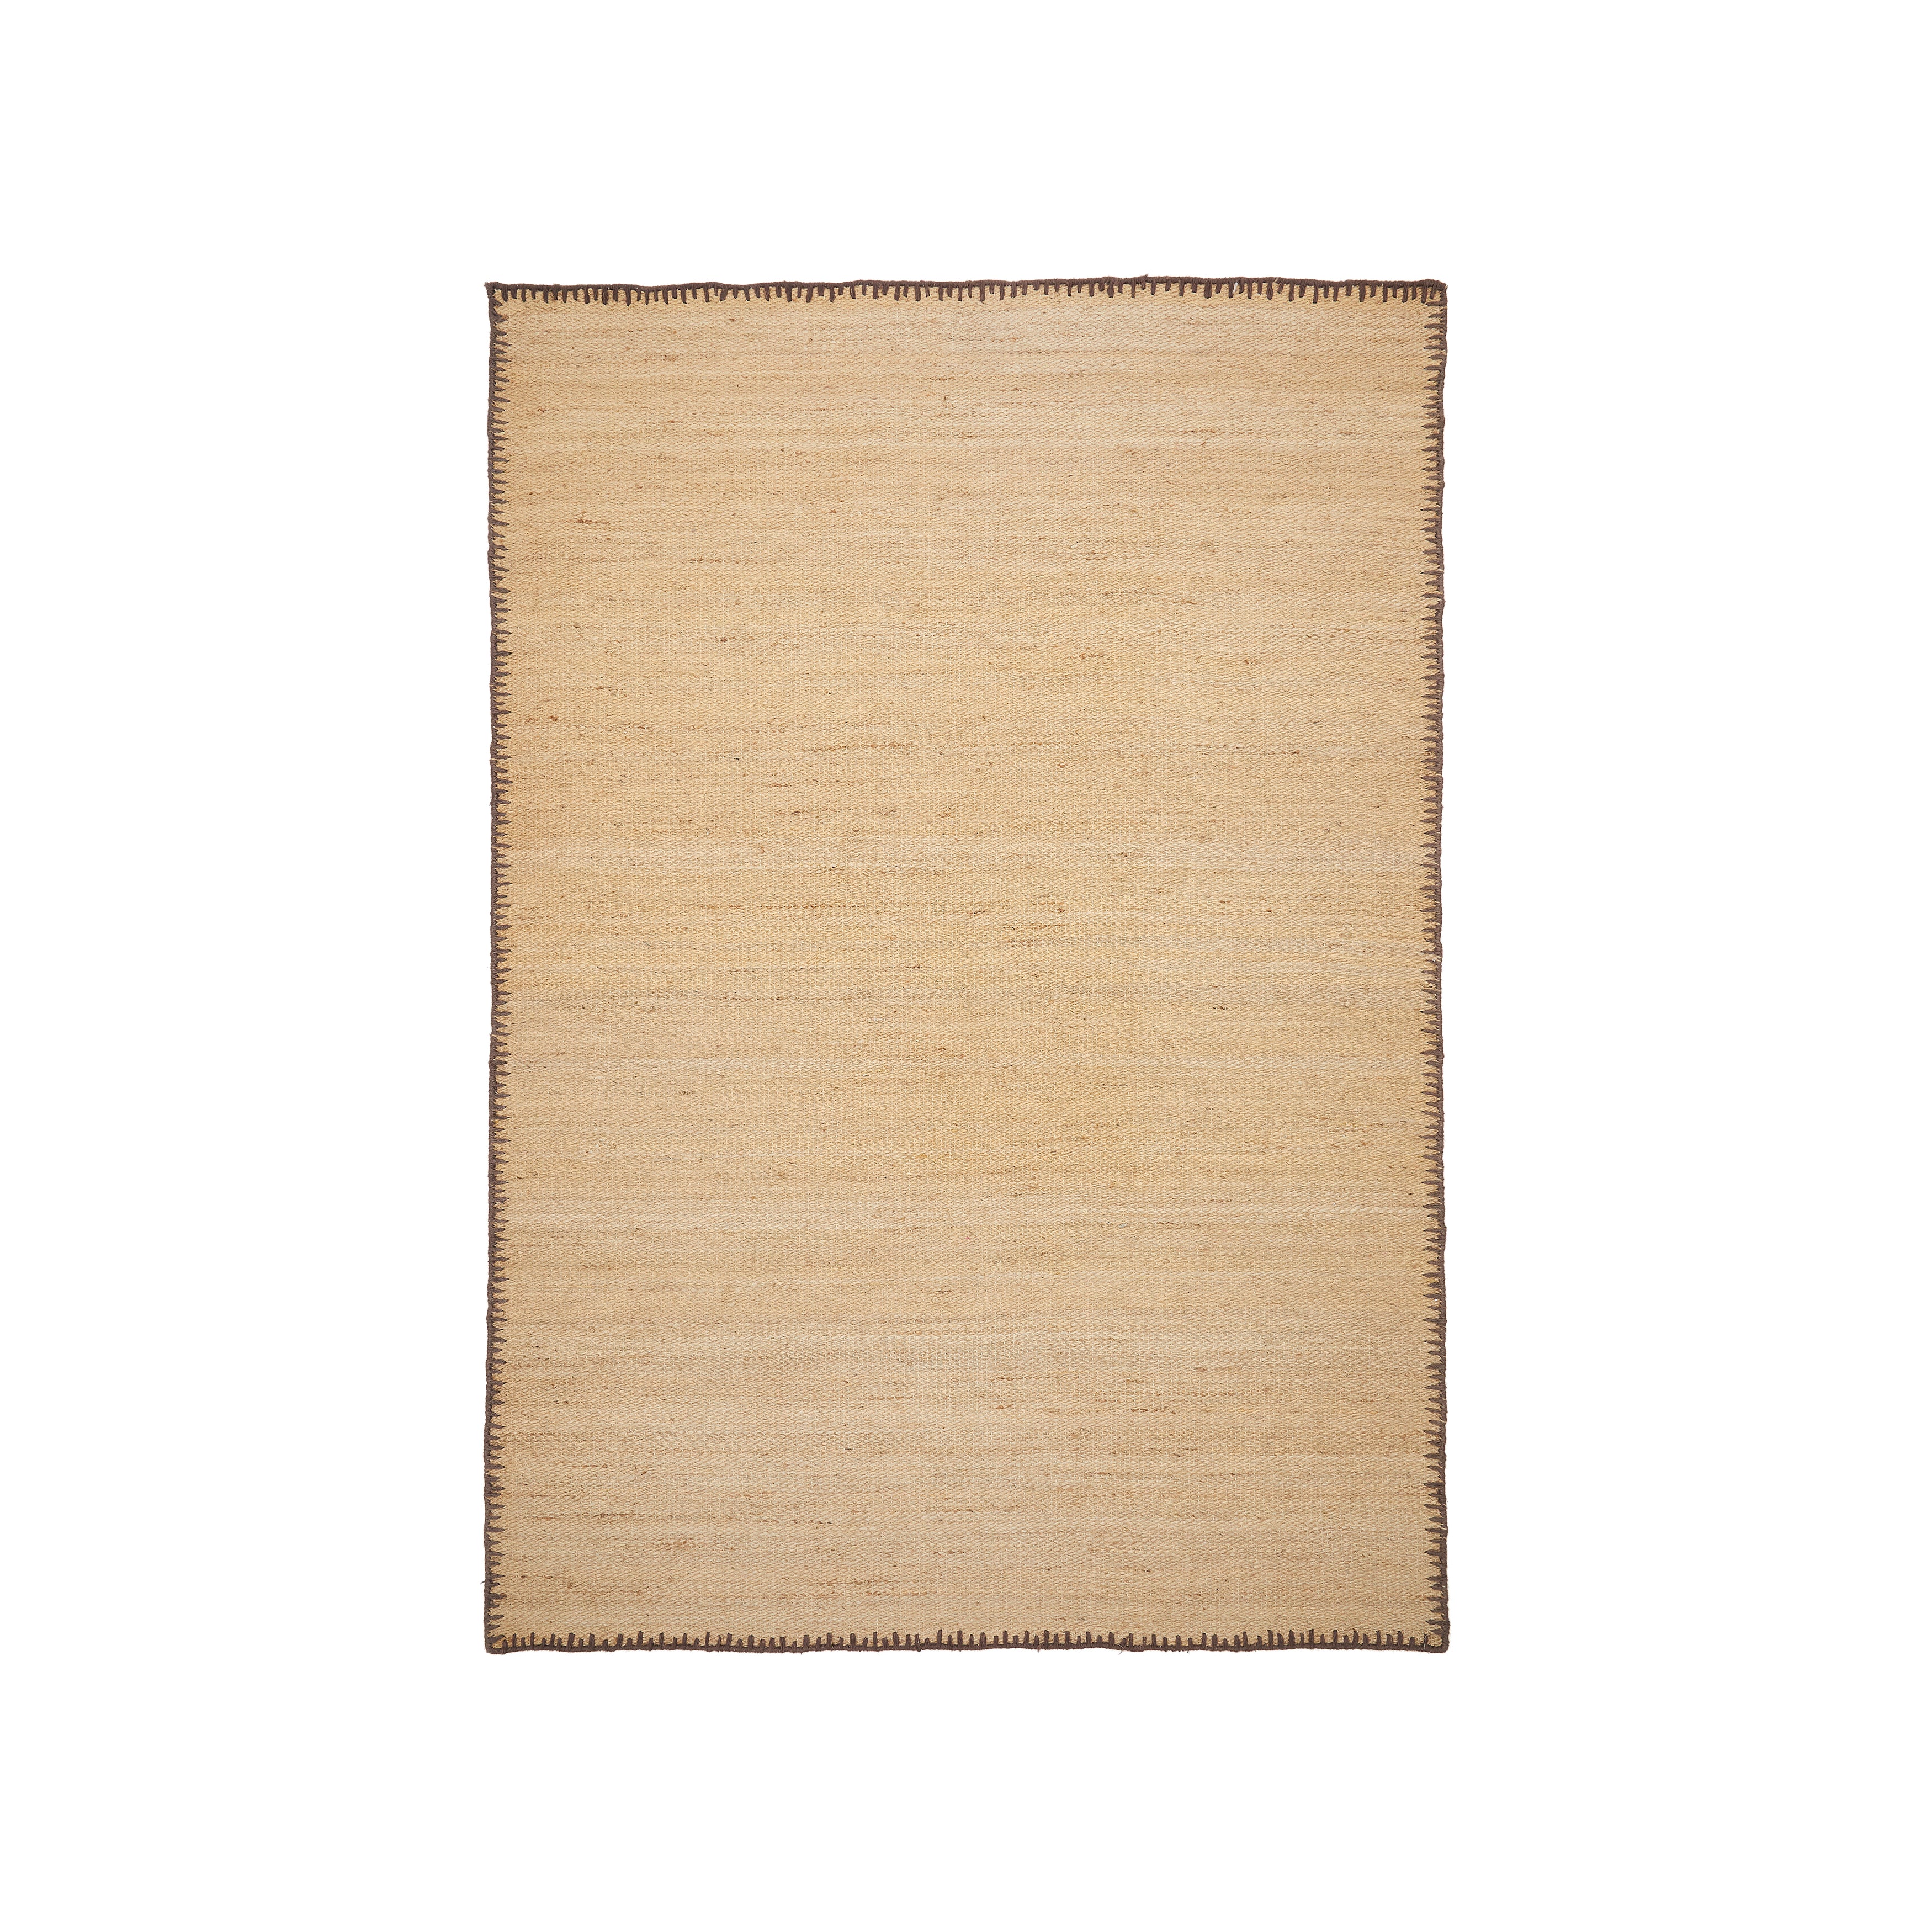 Sorina natural jute carpet with brown border 160 x 230 cm